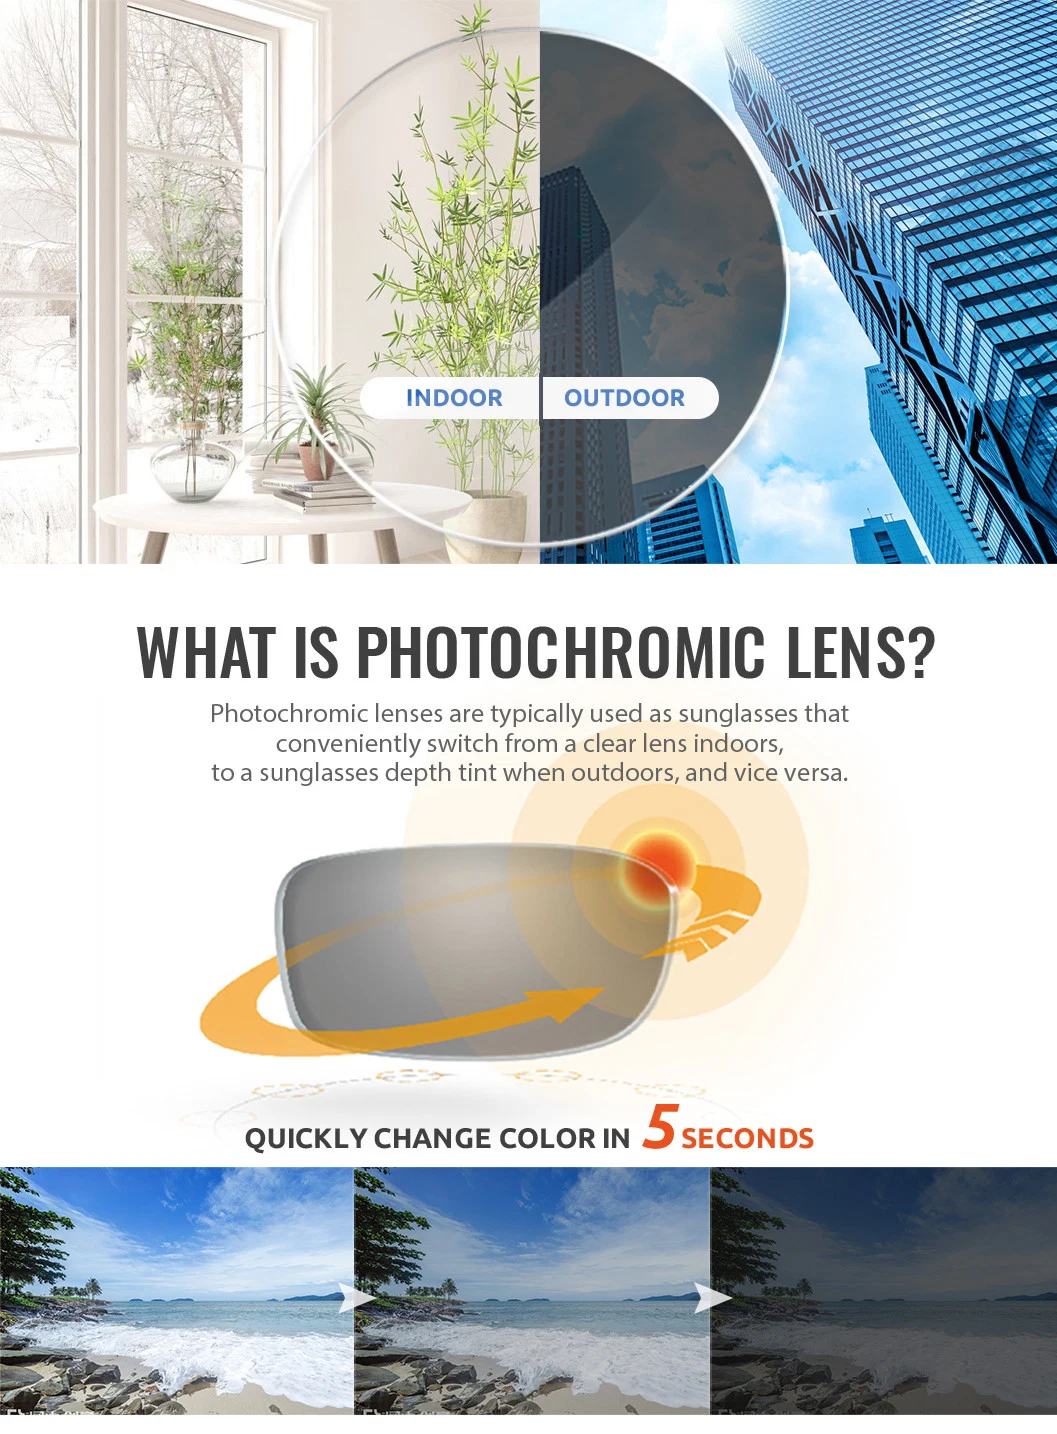 1.56 Transition Lens Optical Progressive for Eye Glass Lenses